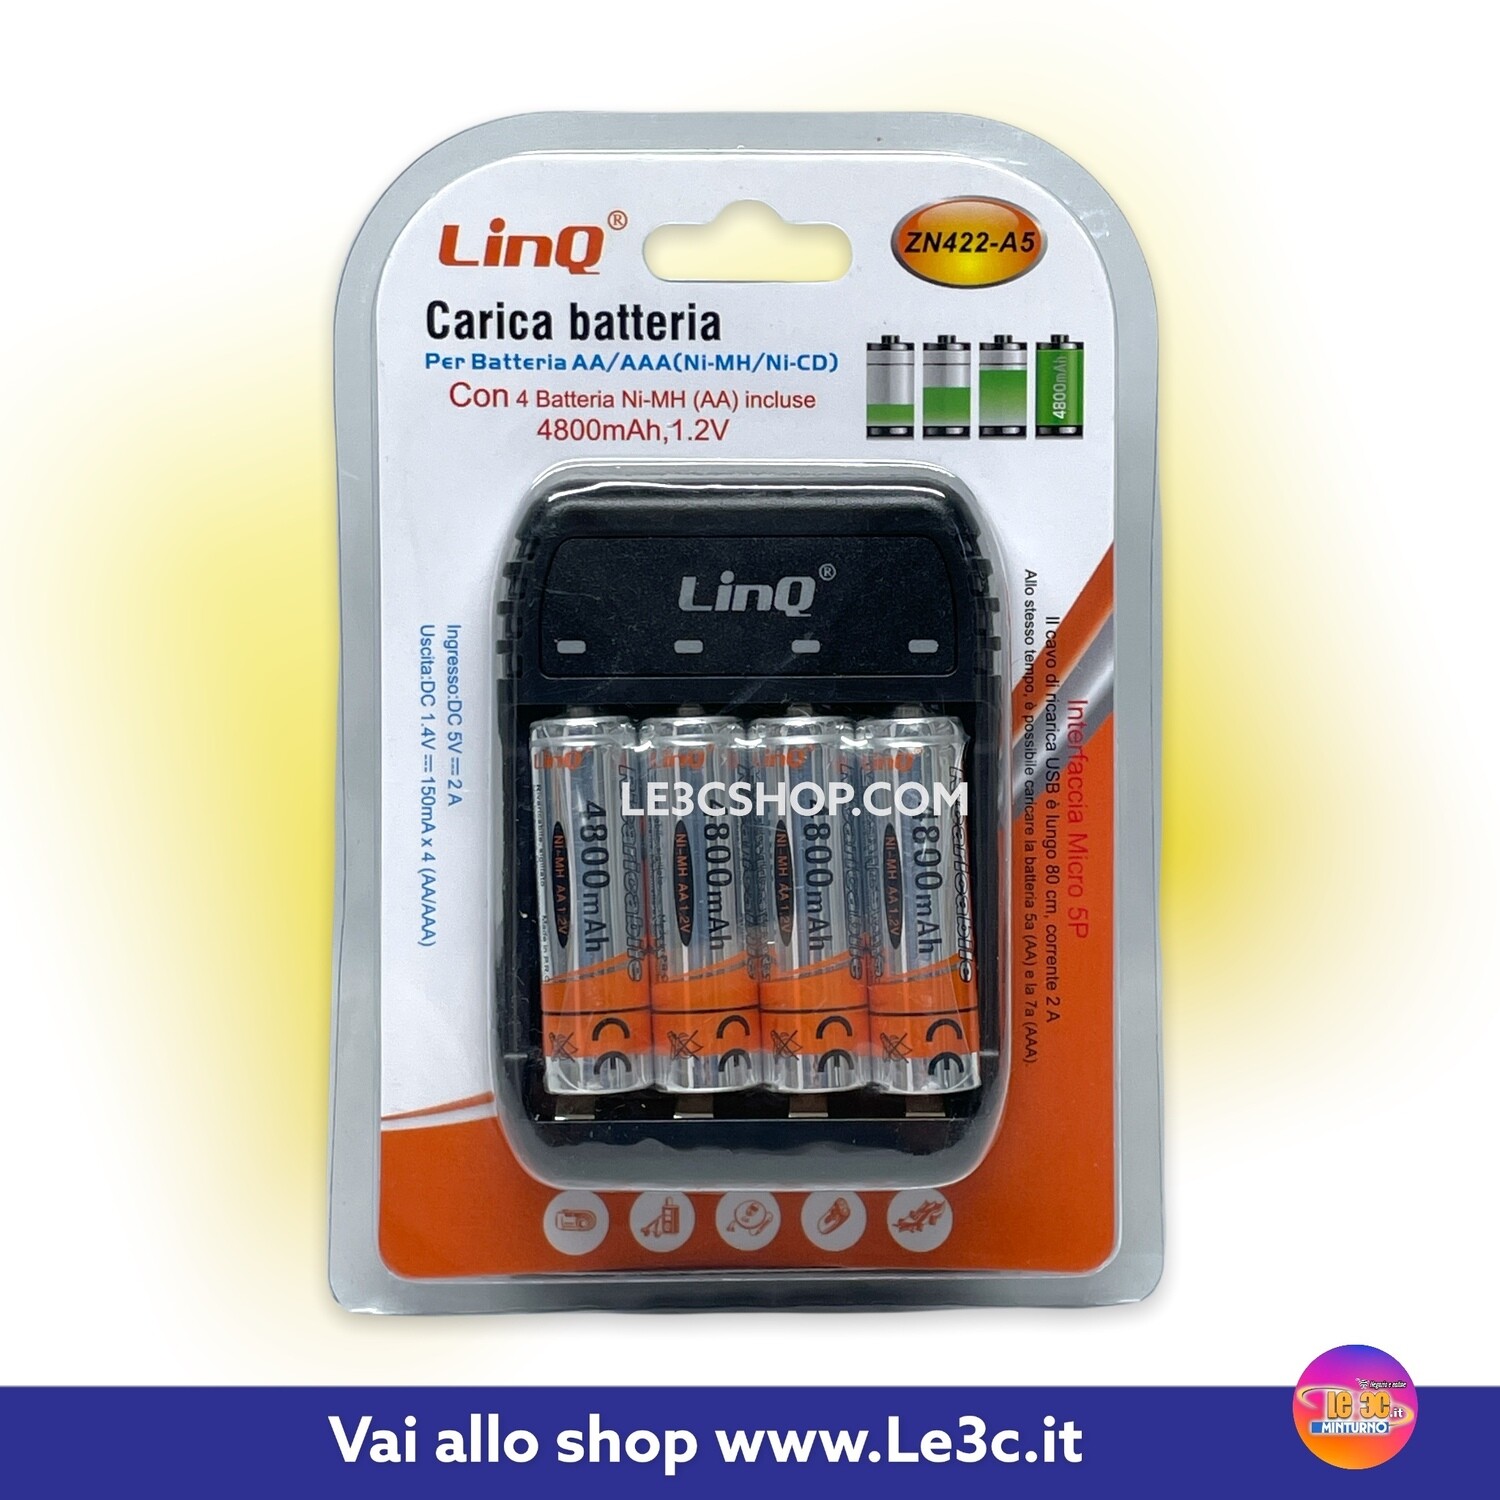 Caricabatterie Linq AAA e AA: ricarica facile e sicura con quattro slot e batterie incluse